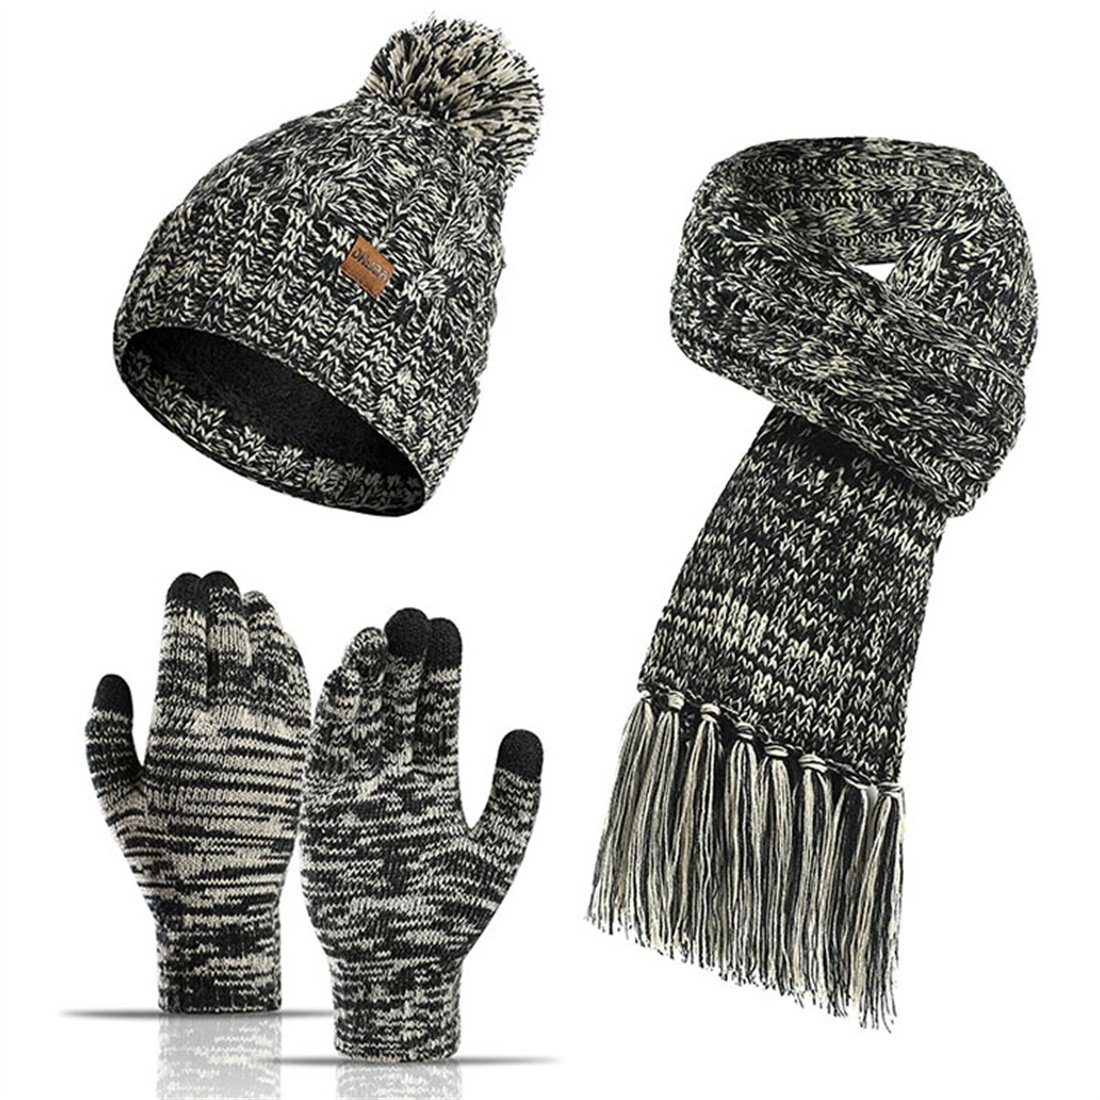 DÖRÖY Strickmütze Wintermütze aus Wolle, Mütze + Schal + Touchscreen-Handschuhe 3er-Set Schwarz